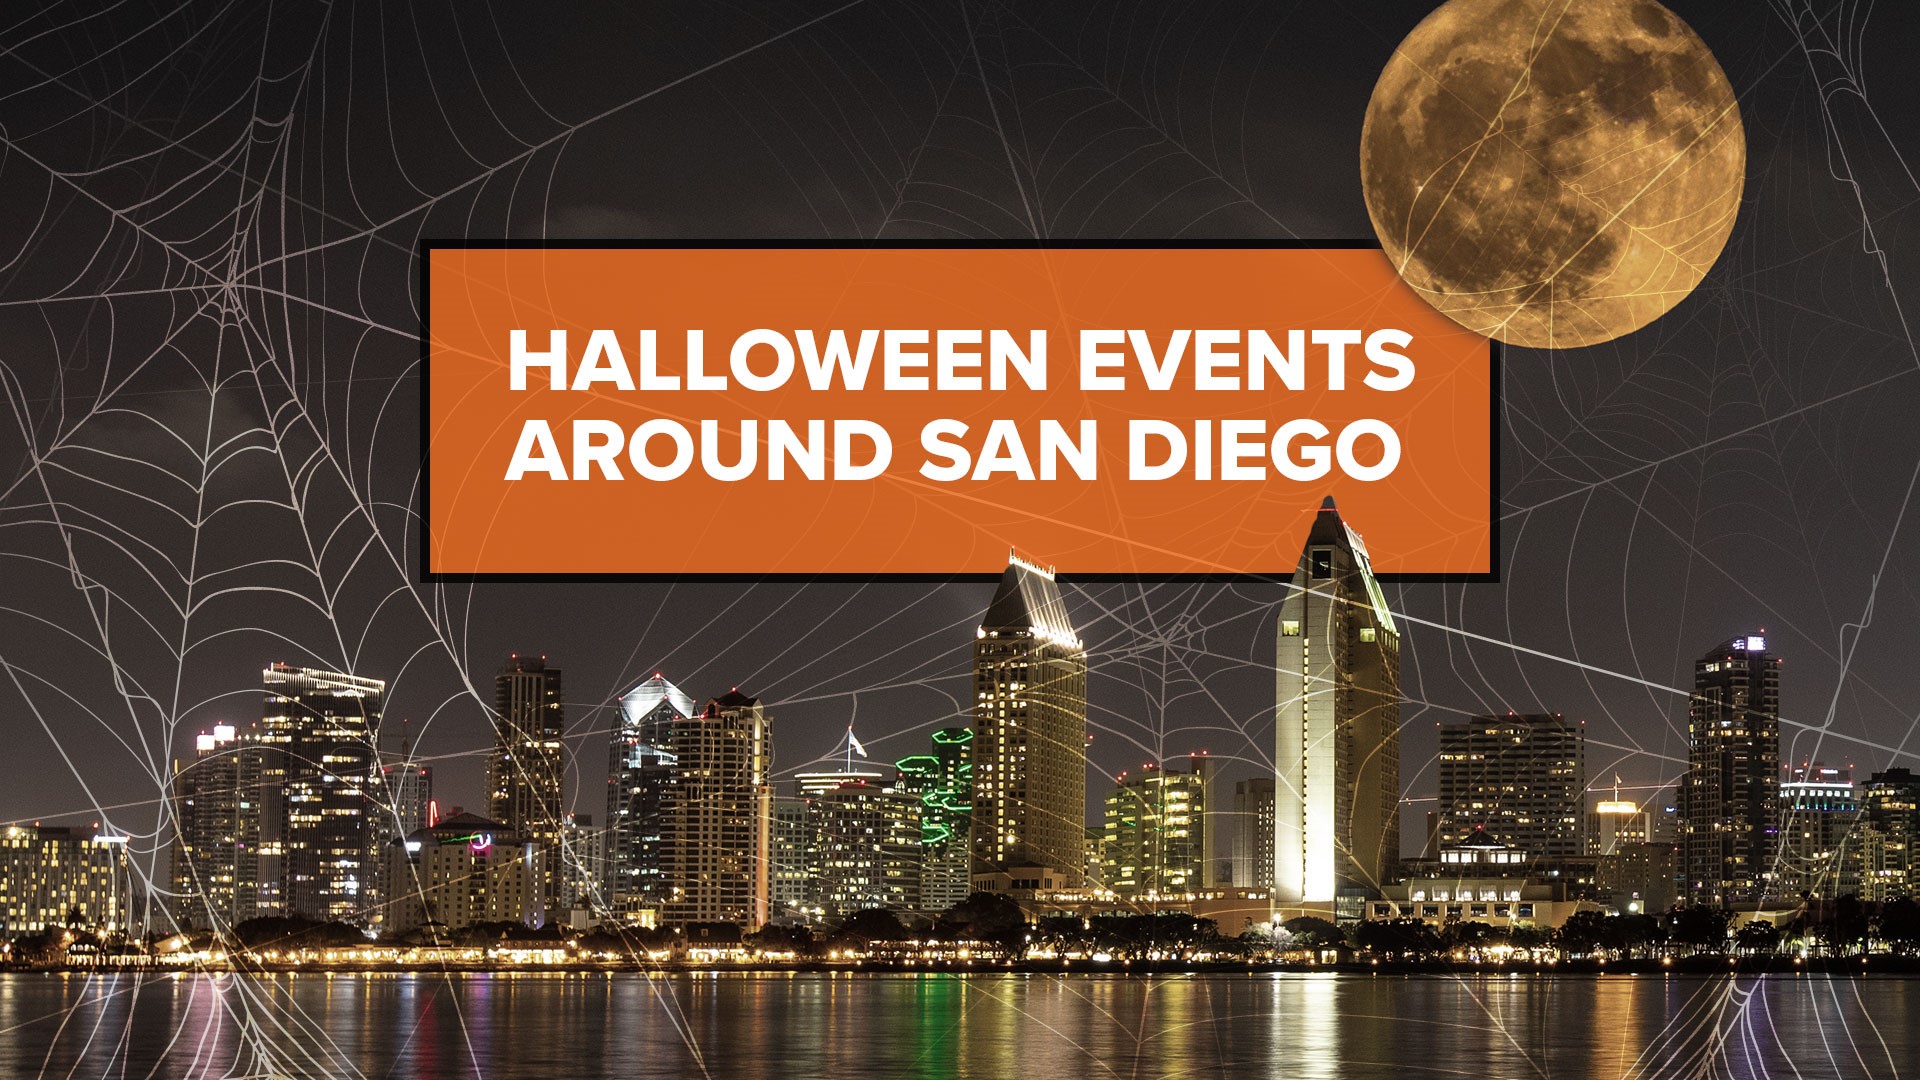 2019 Halloween events around San Diego